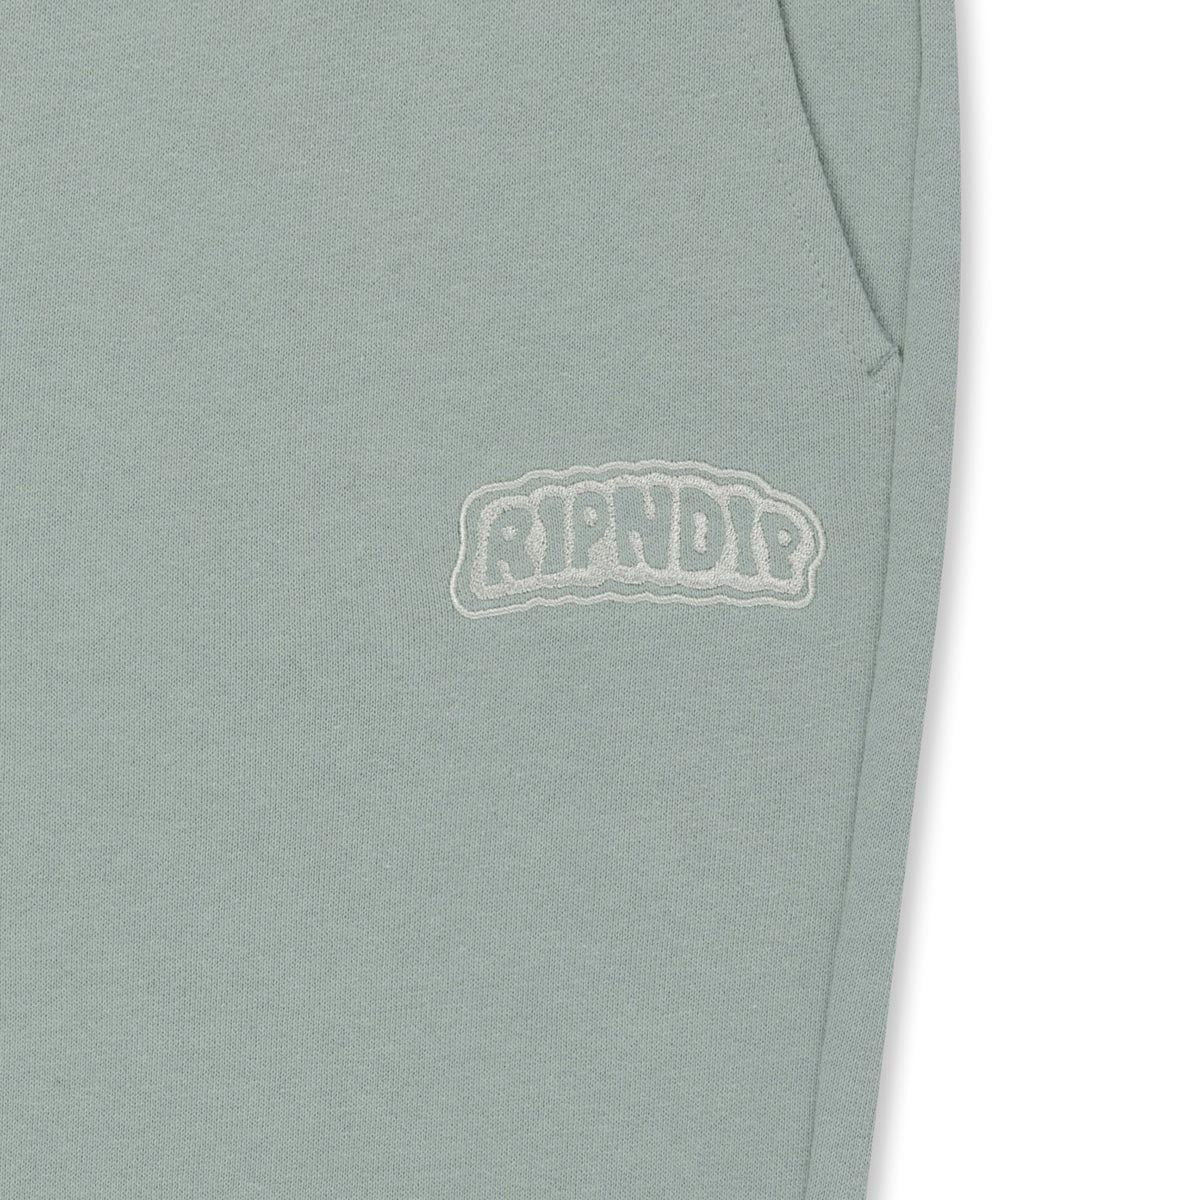 RIPNDIP Bubble Sweat Pants - Cool Gray image 3